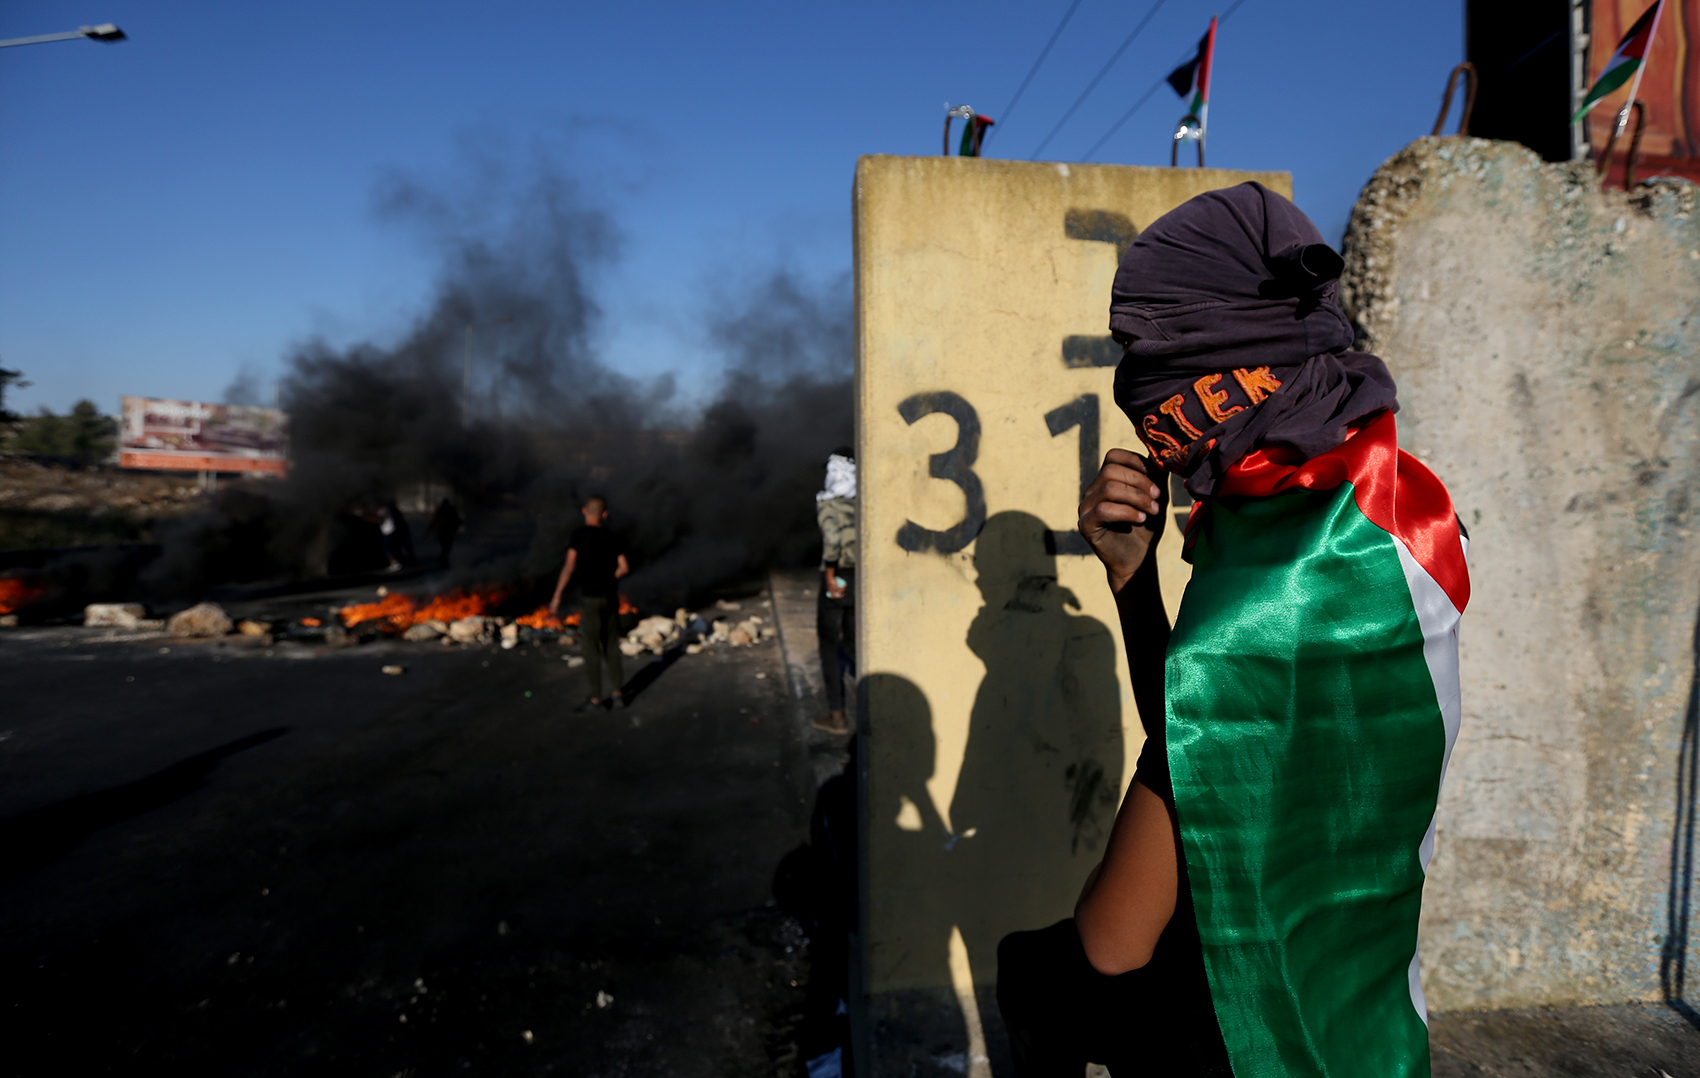 مواجهات بين فلسطينيين وقوات الاحتلال الإسرائيلي في الضفة الغربية المحتلة، 17/5/2021. (وفا/حمزة شلش)